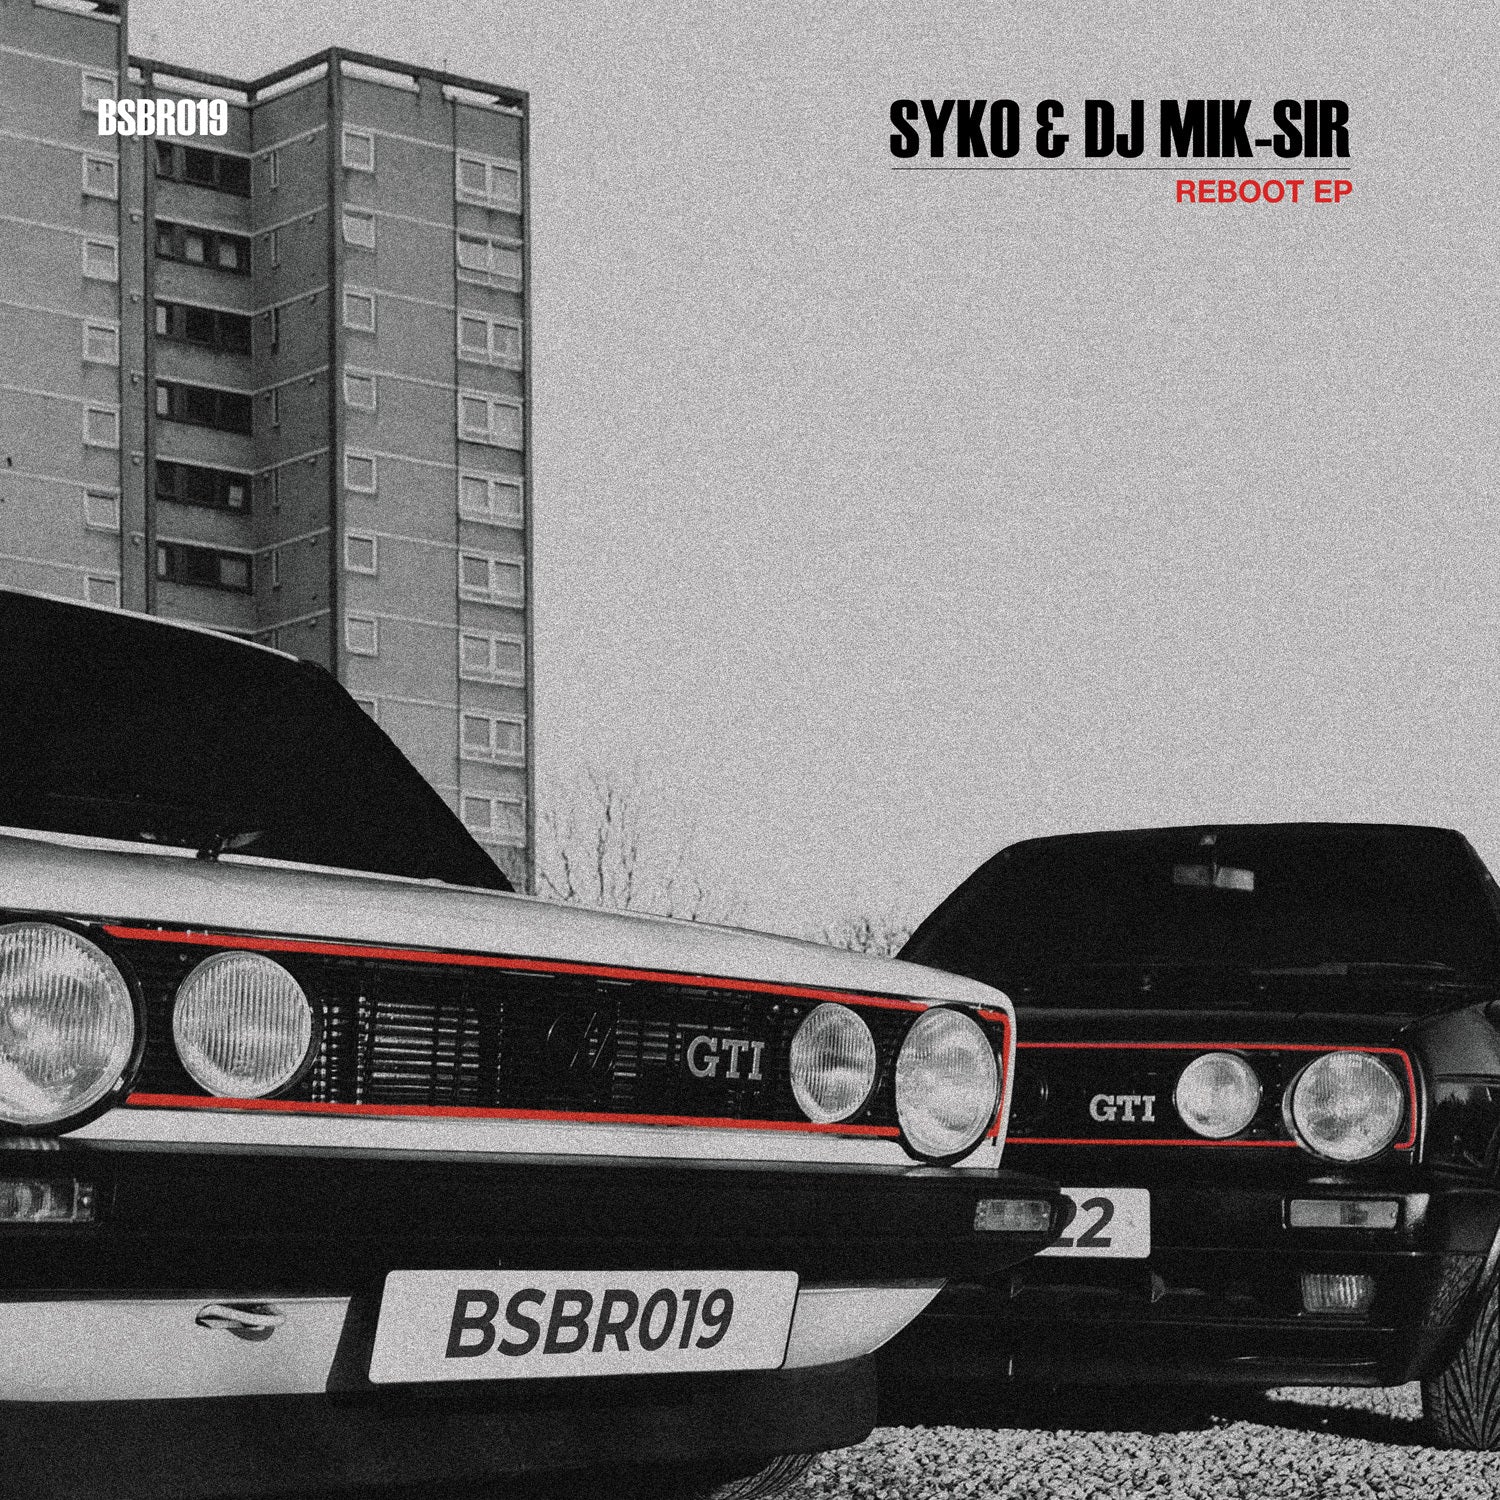 SYKO & DJ MIK-SIR 'REBOOT EP' 12"